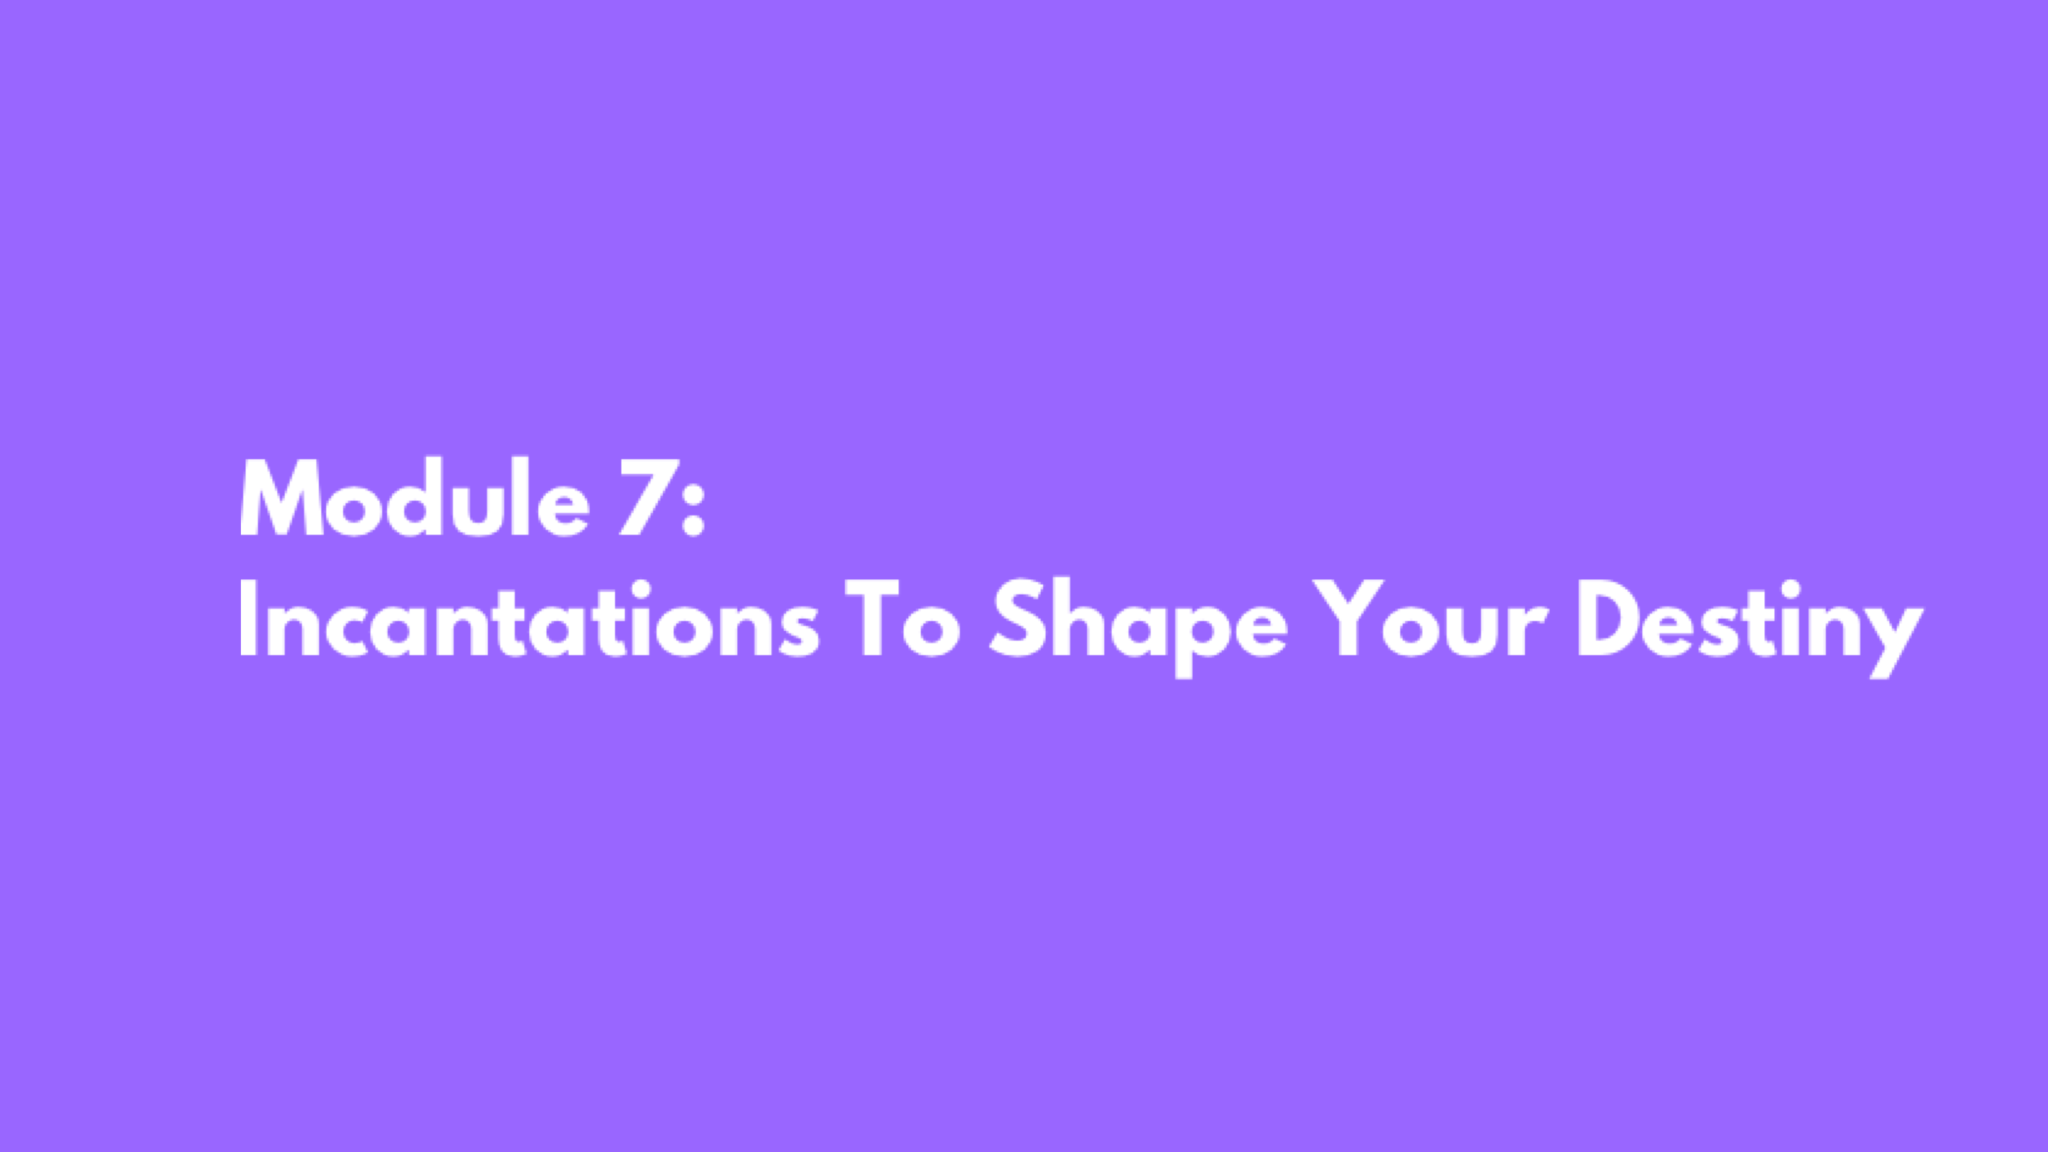 Module 7: Incantations To Shape Your Destiny